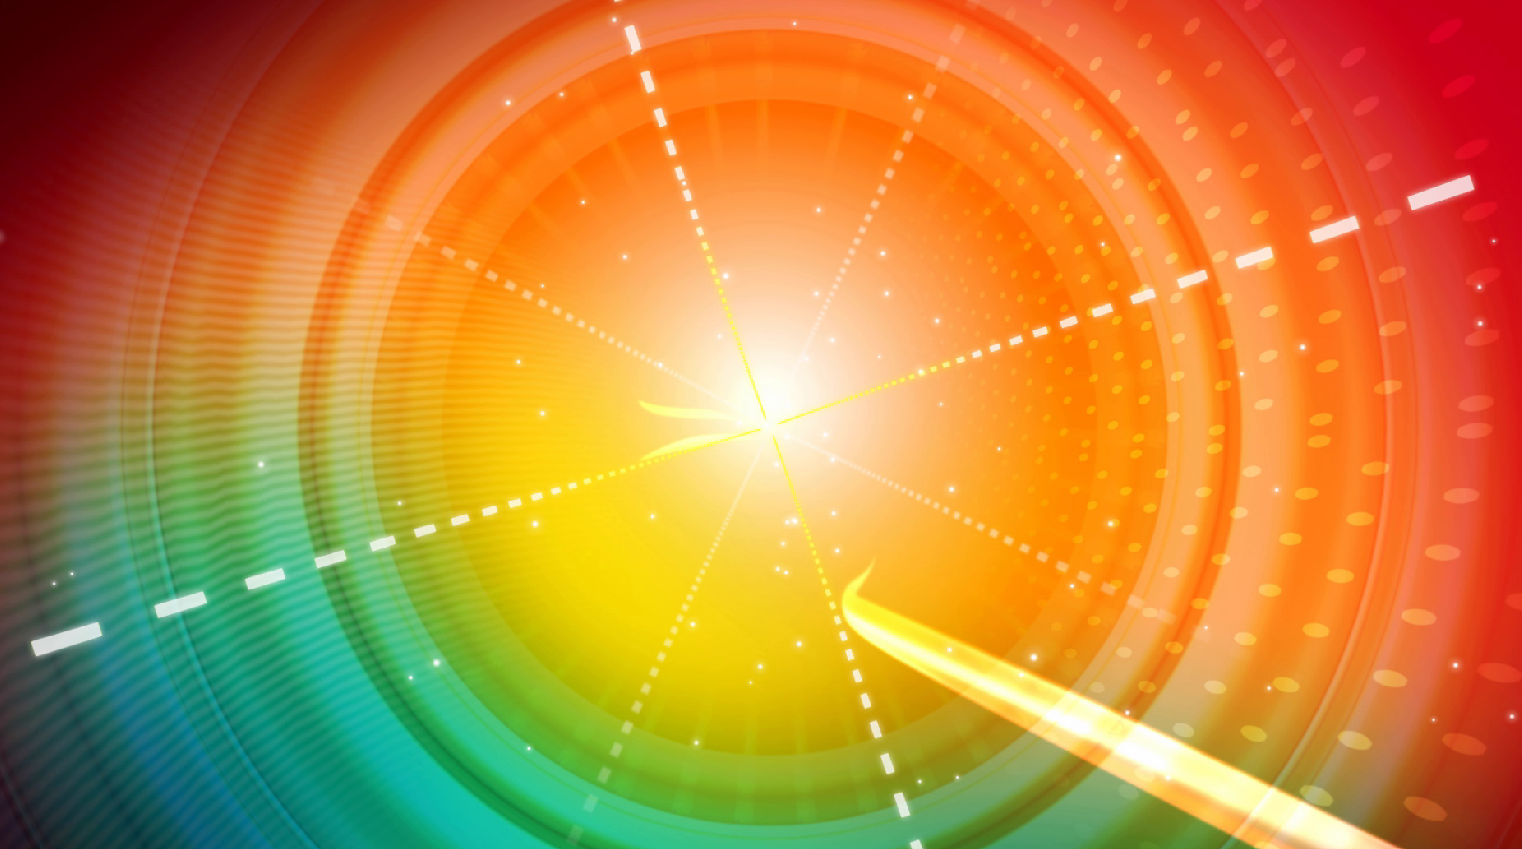 彩虹色渐变背景光环中央循环扩大动感震撼视频素材-92素材网